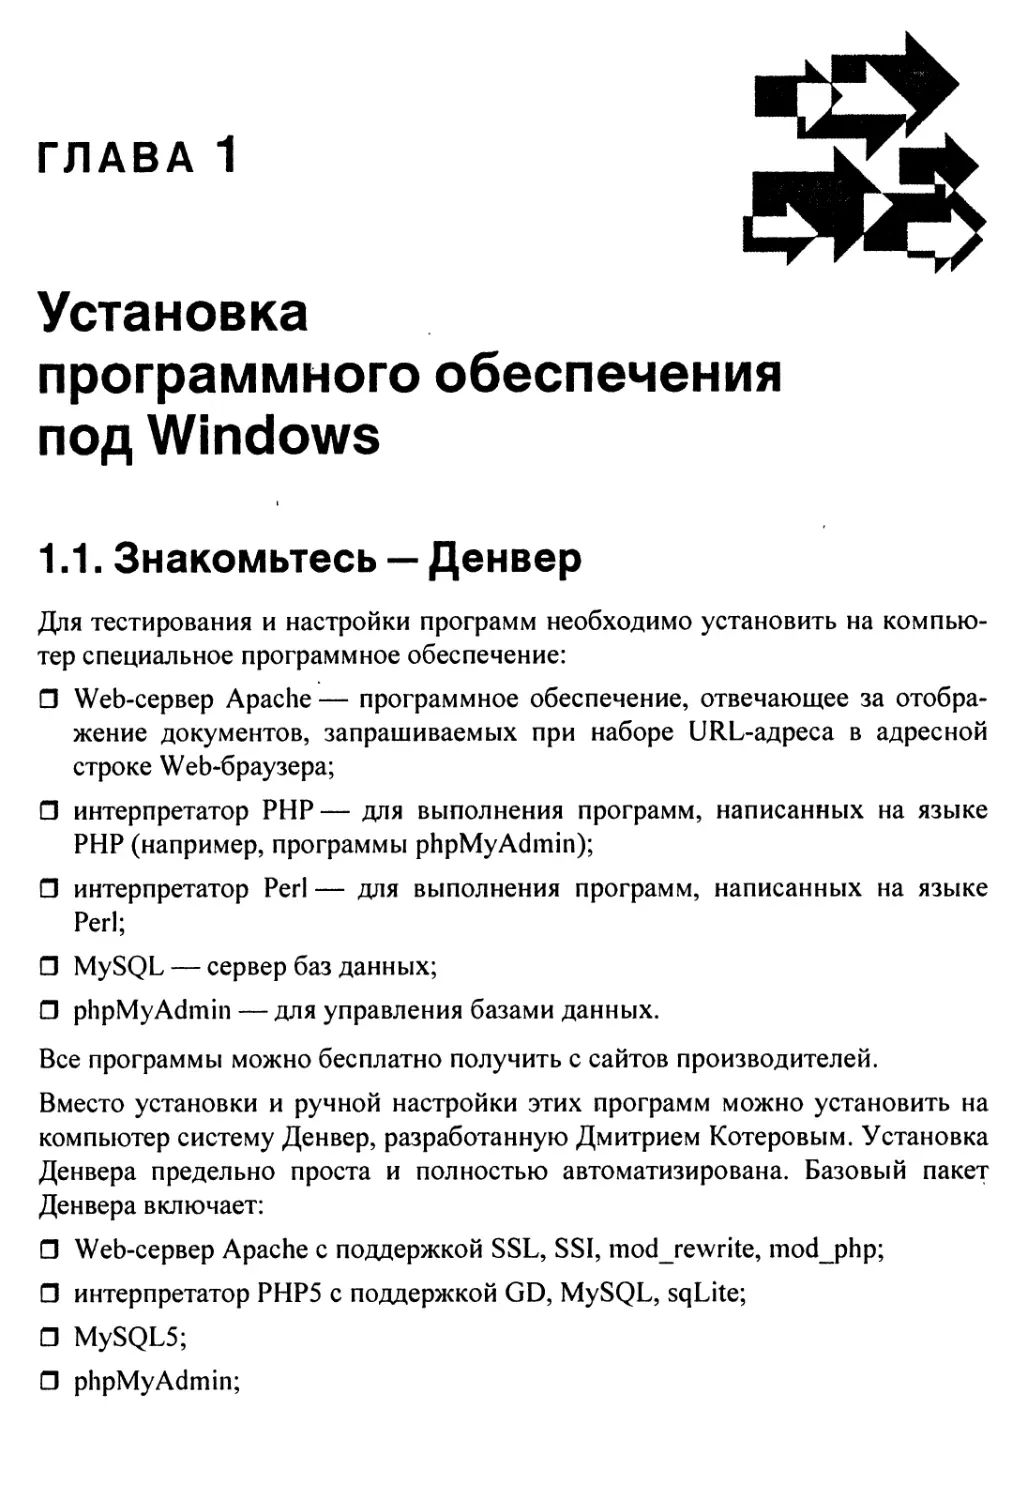 Глава 1. Установка программного обеспечения под Windows